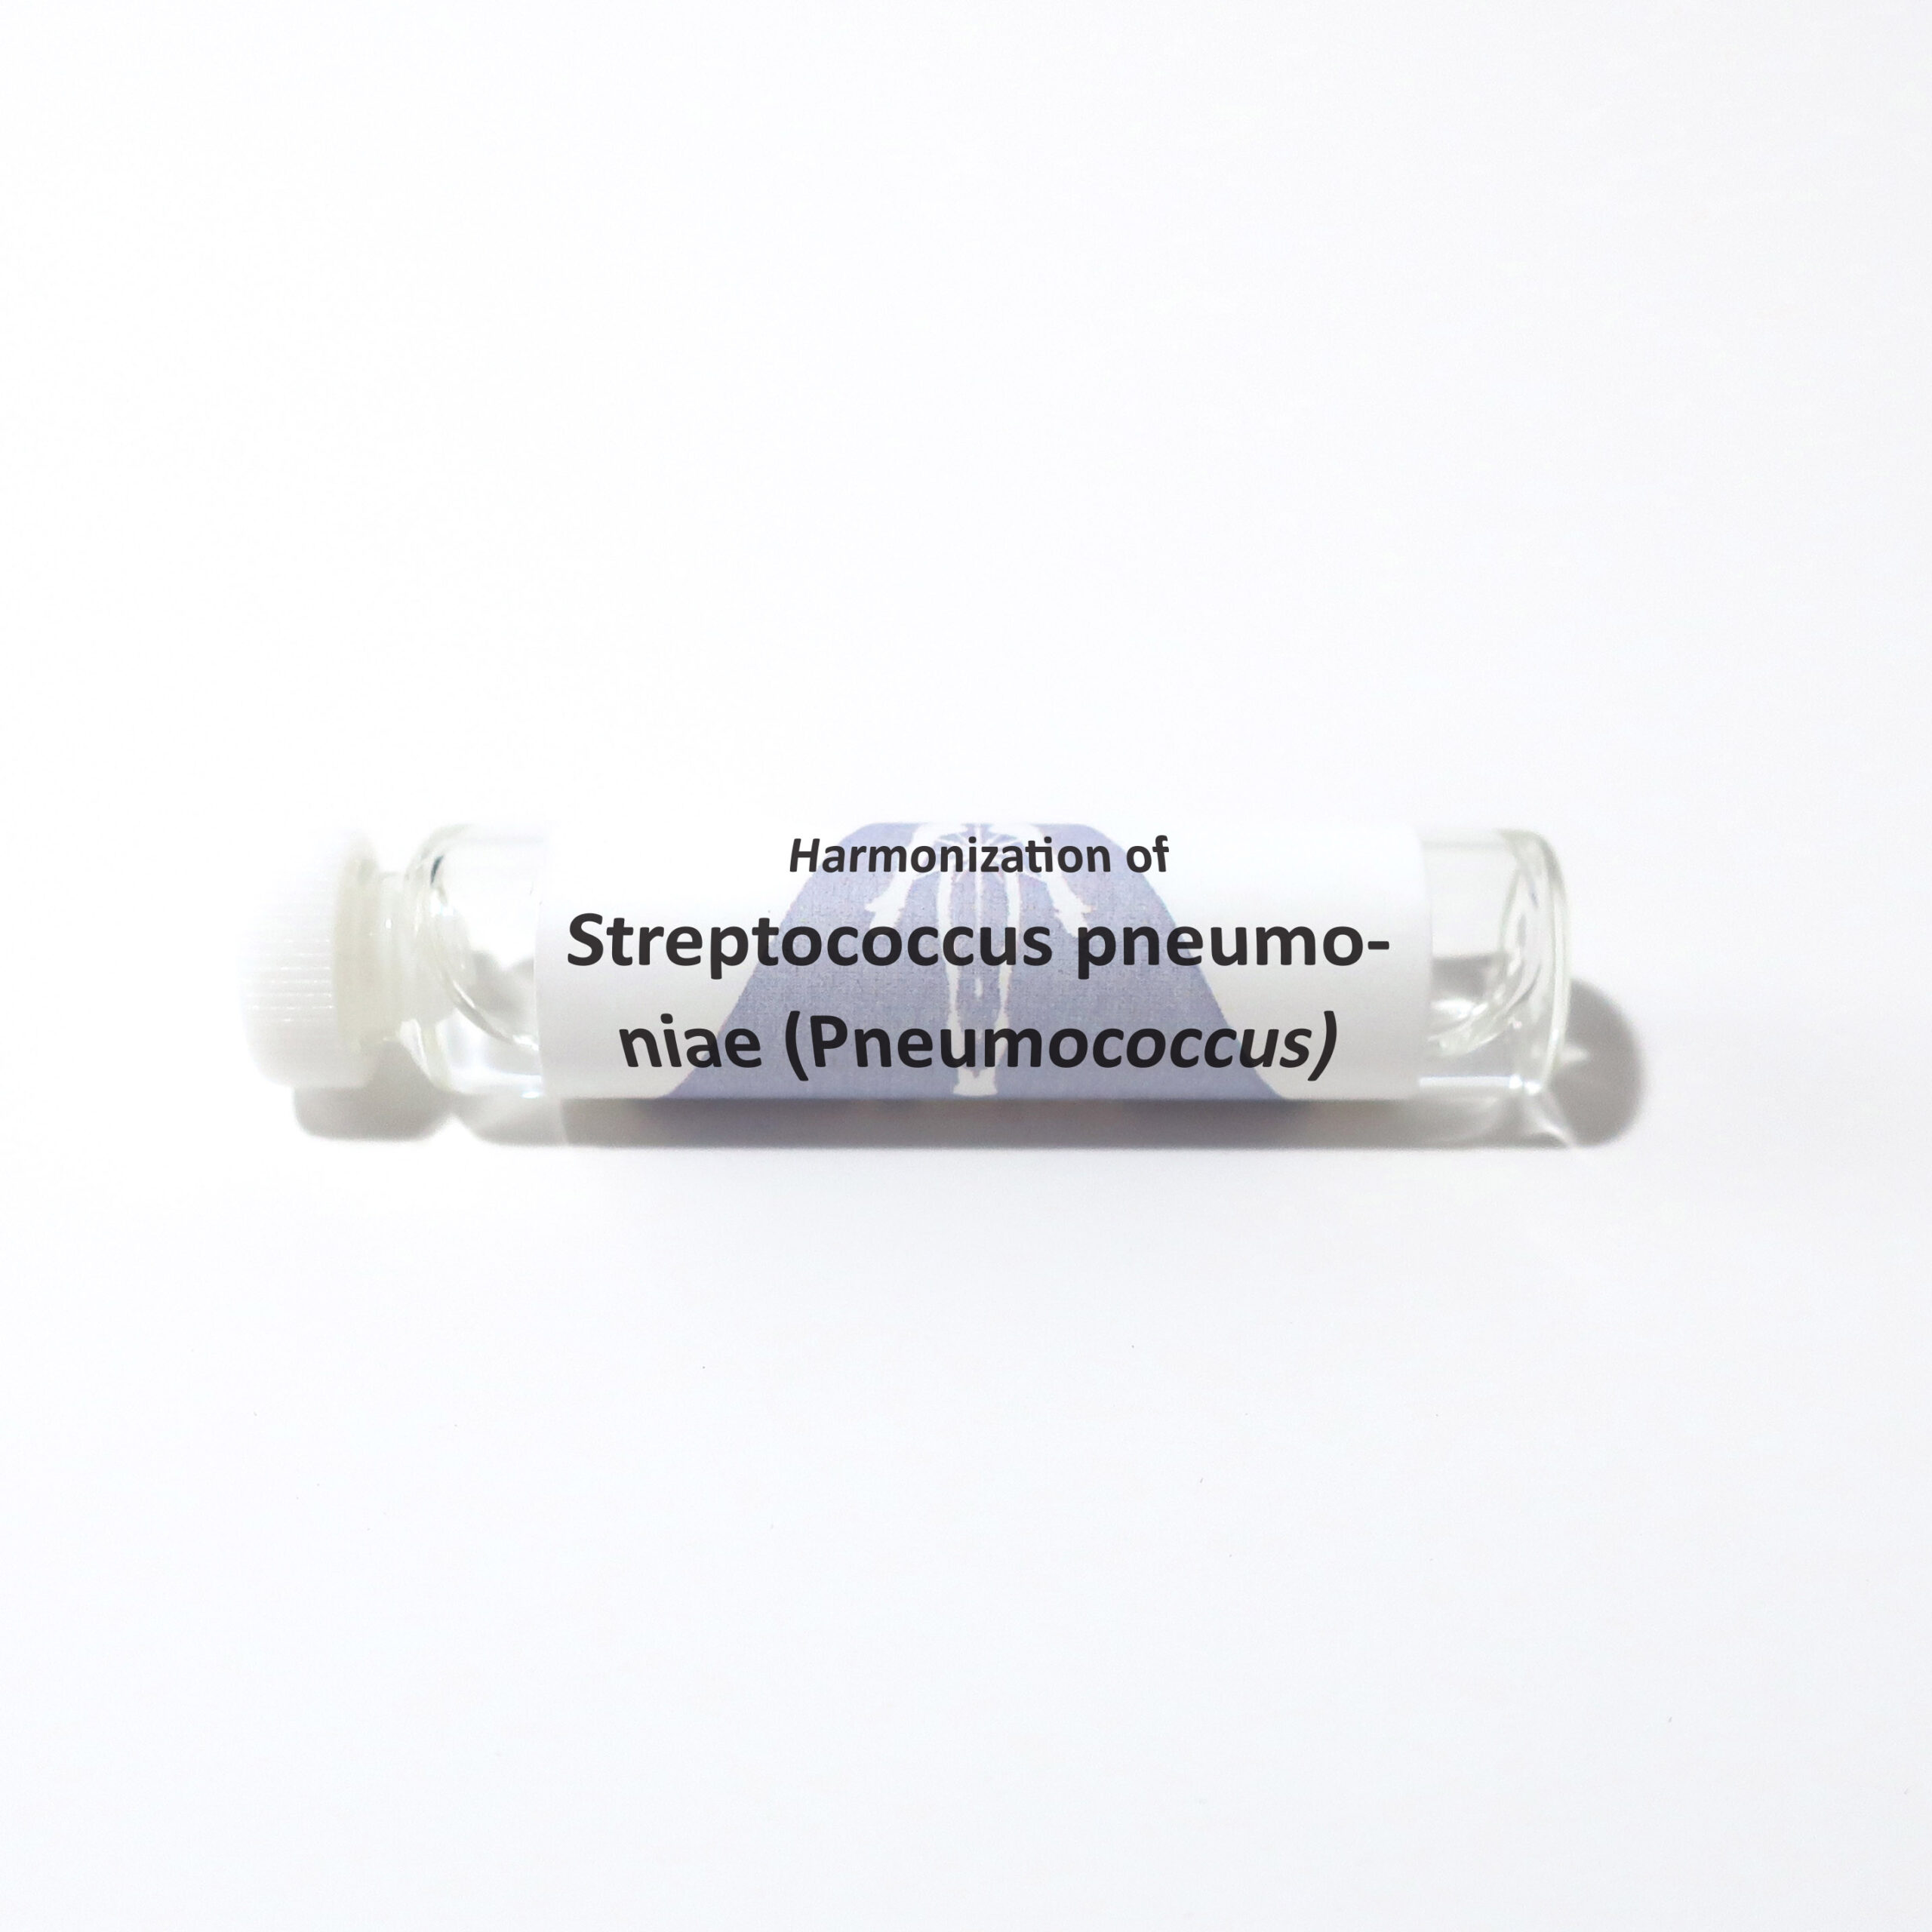 Streptococcus pneumoniae (Pneumococcus)